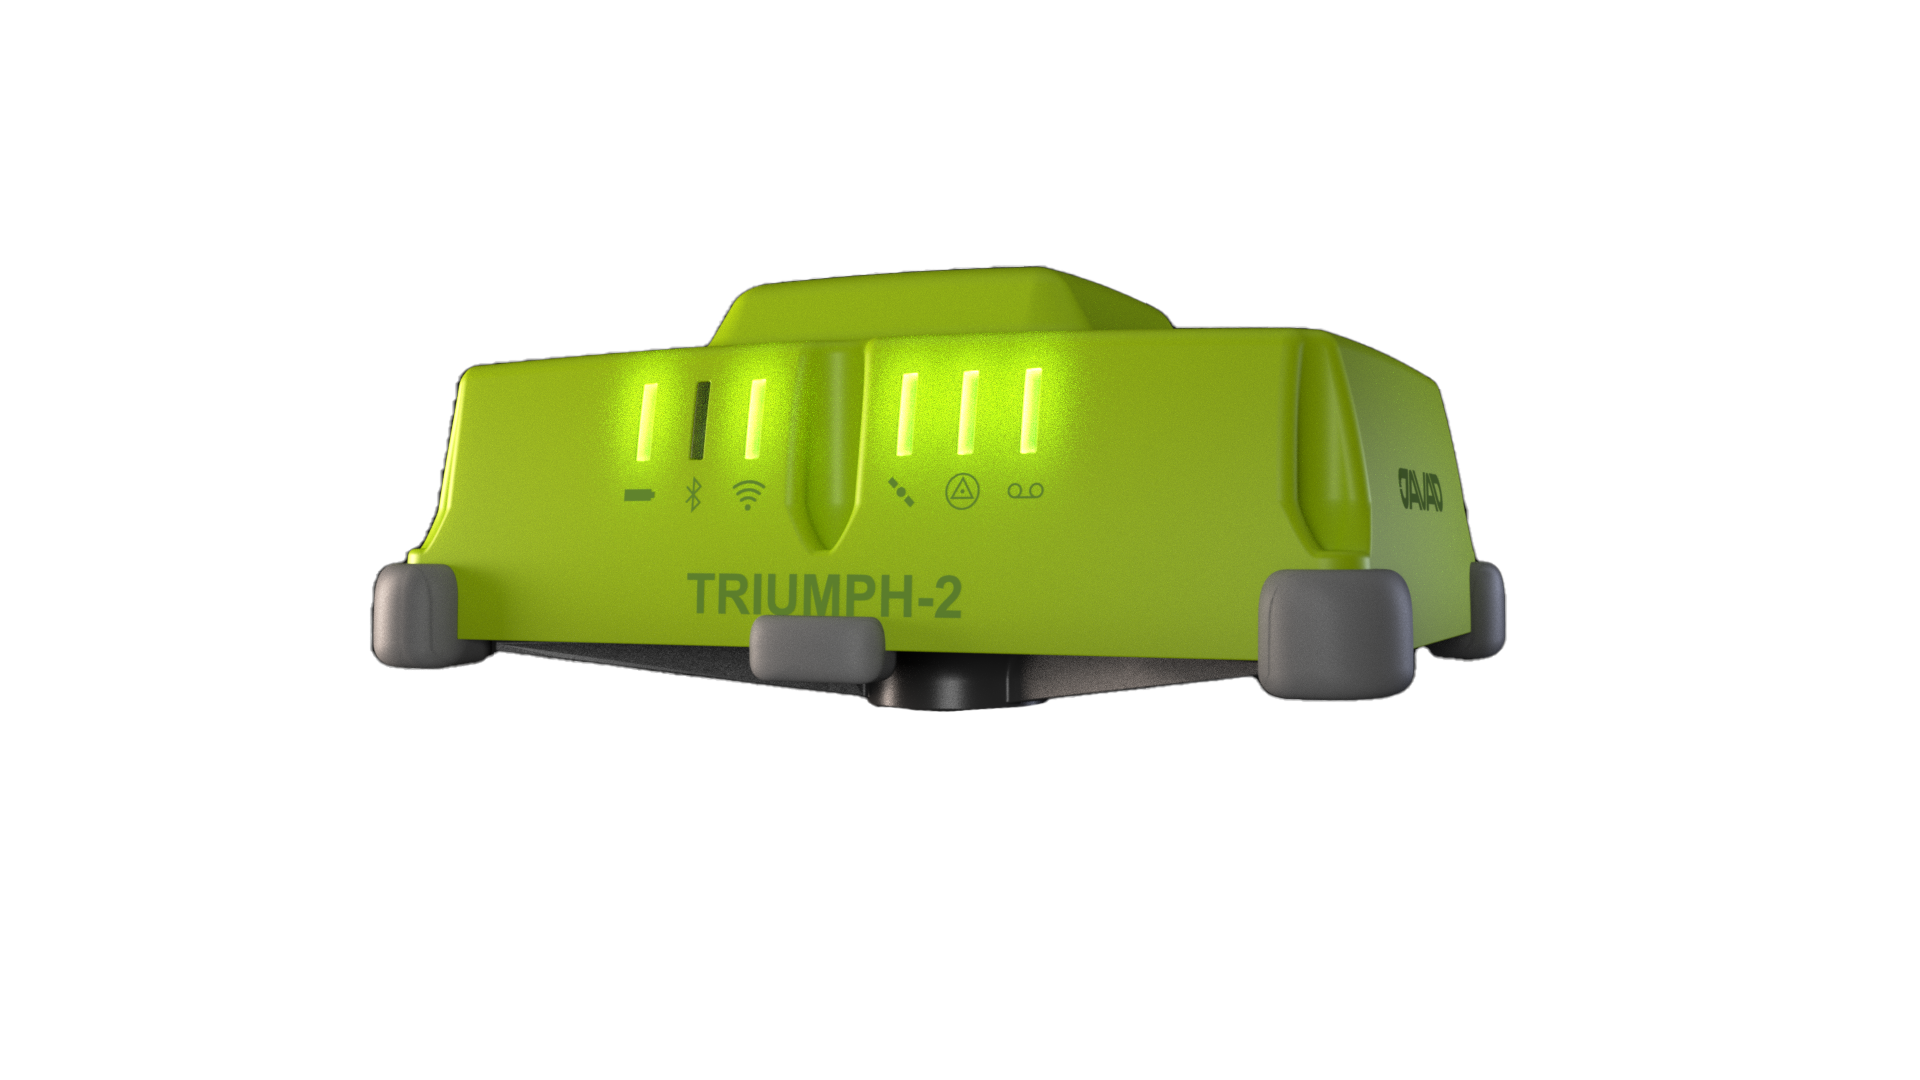 TRIUMPH-2